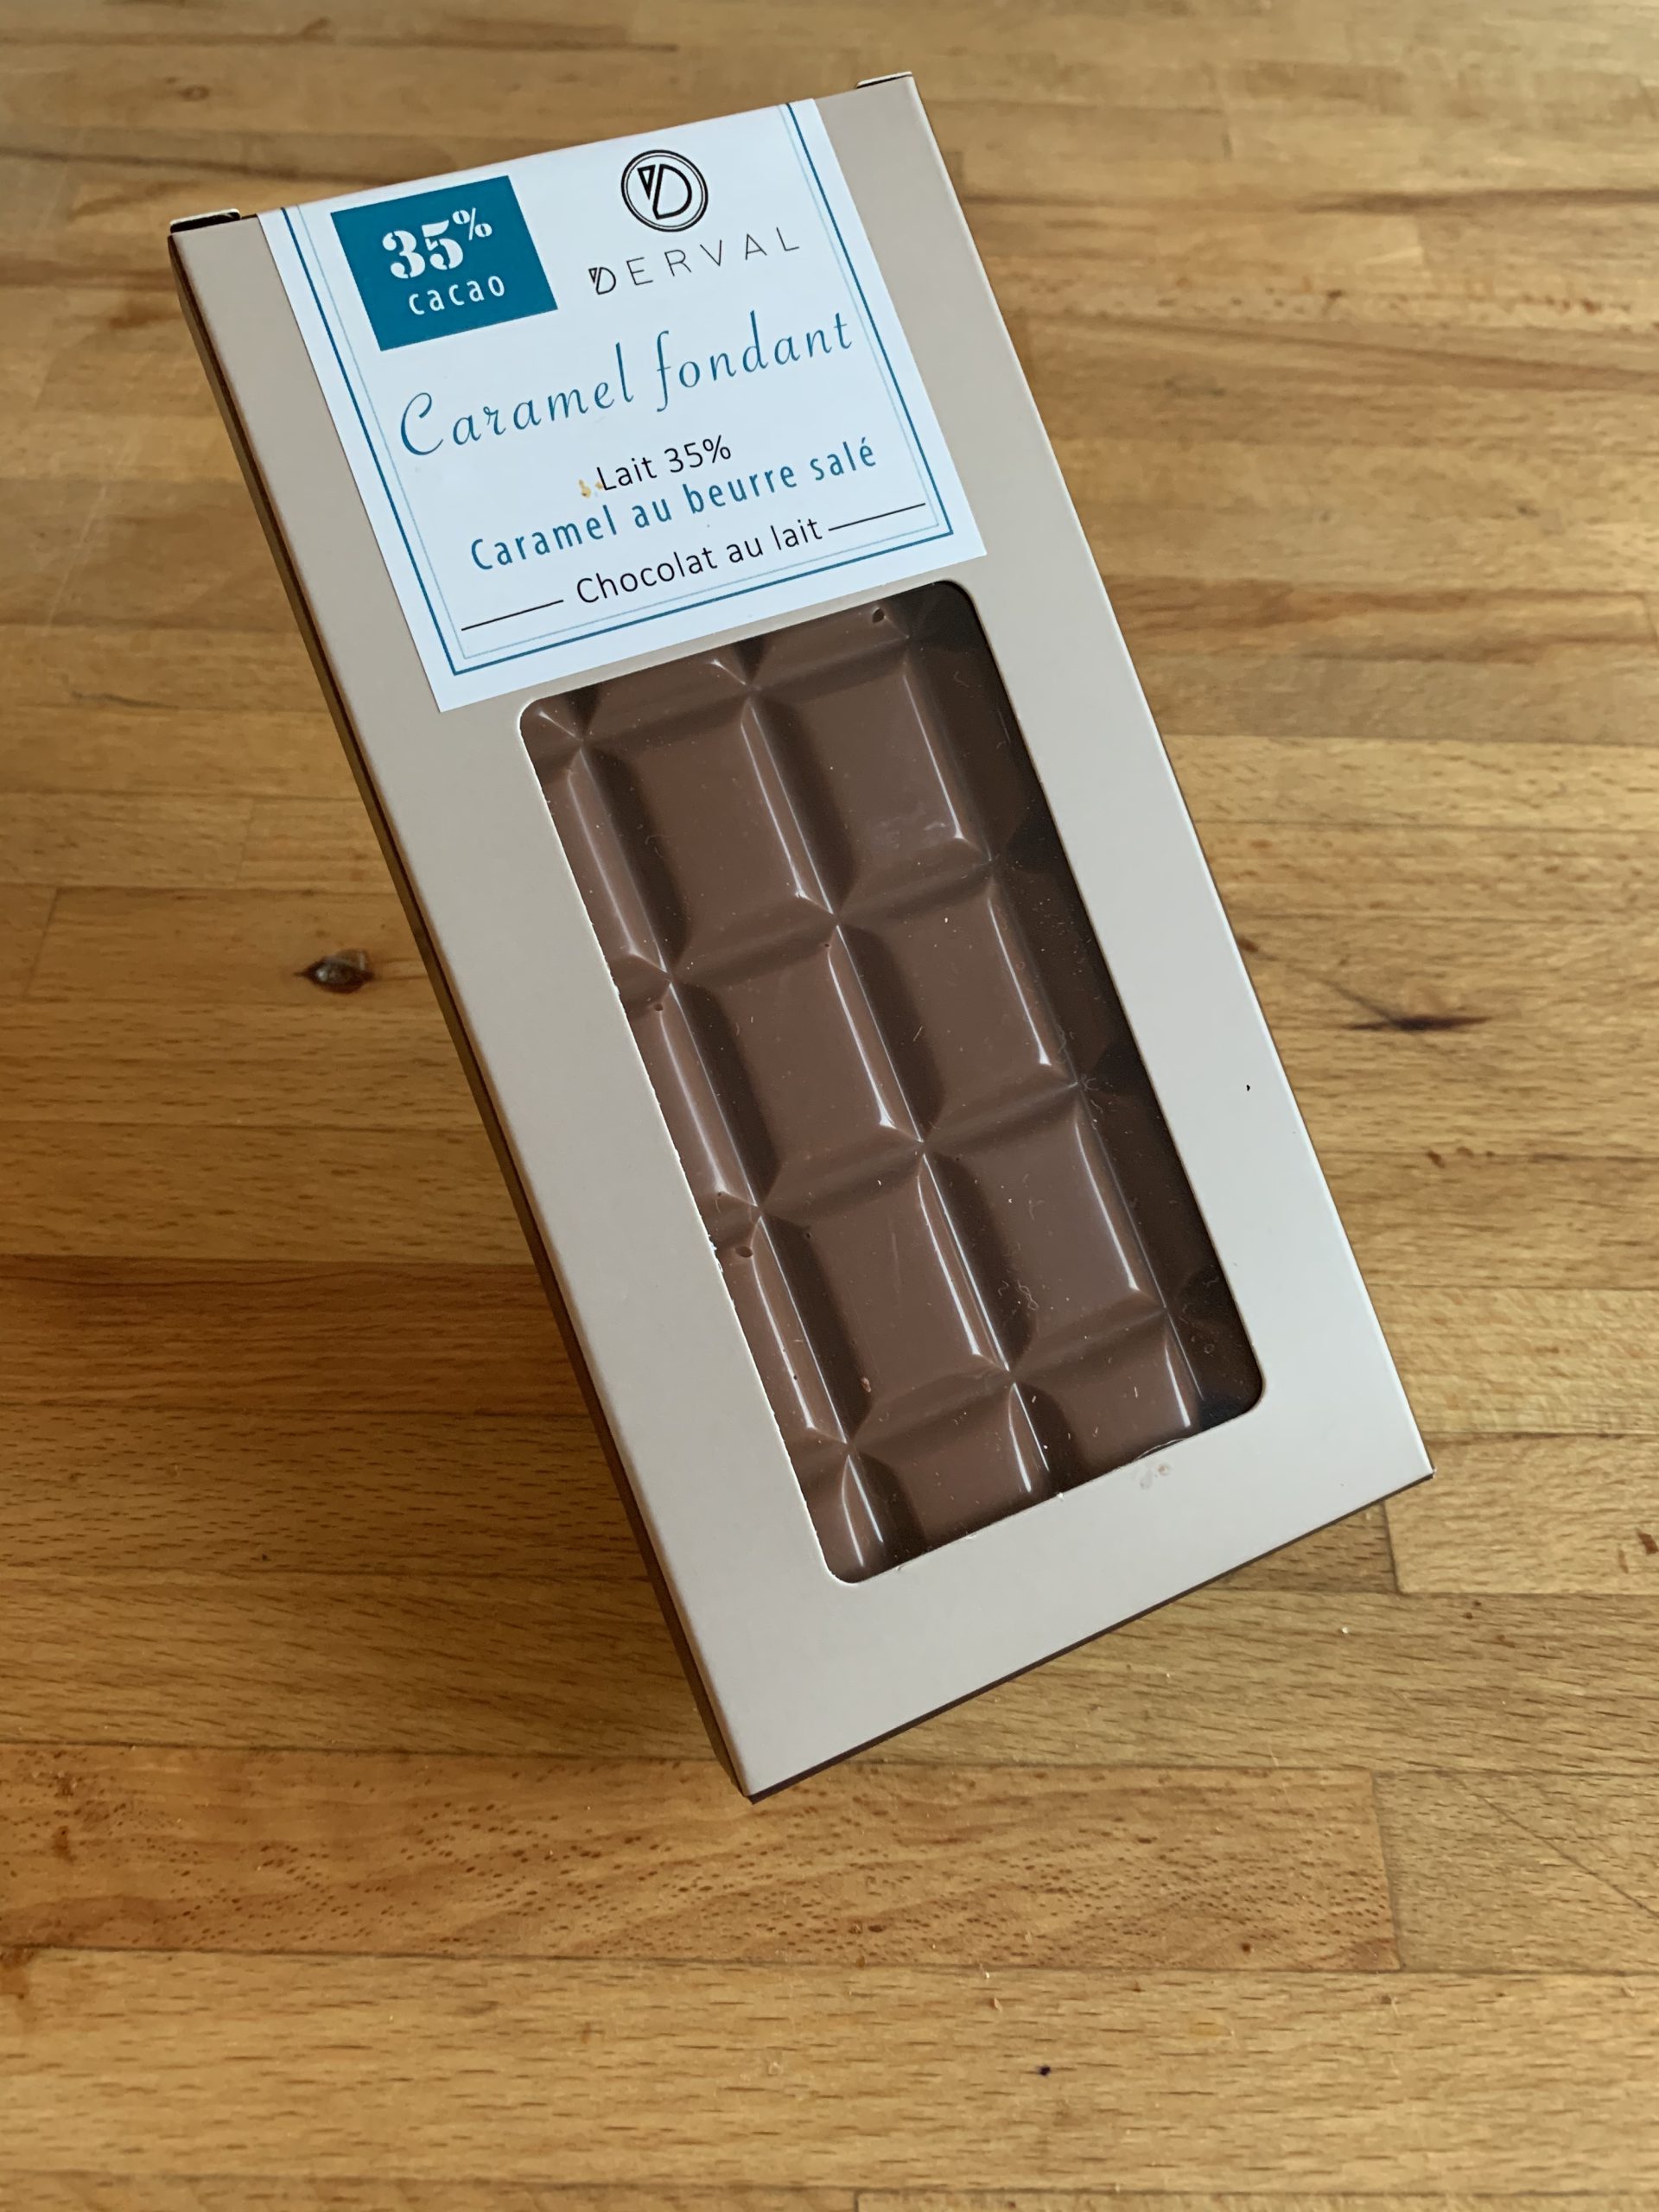 Tablette fourrée chocolat lait 35% – Caramel fondant